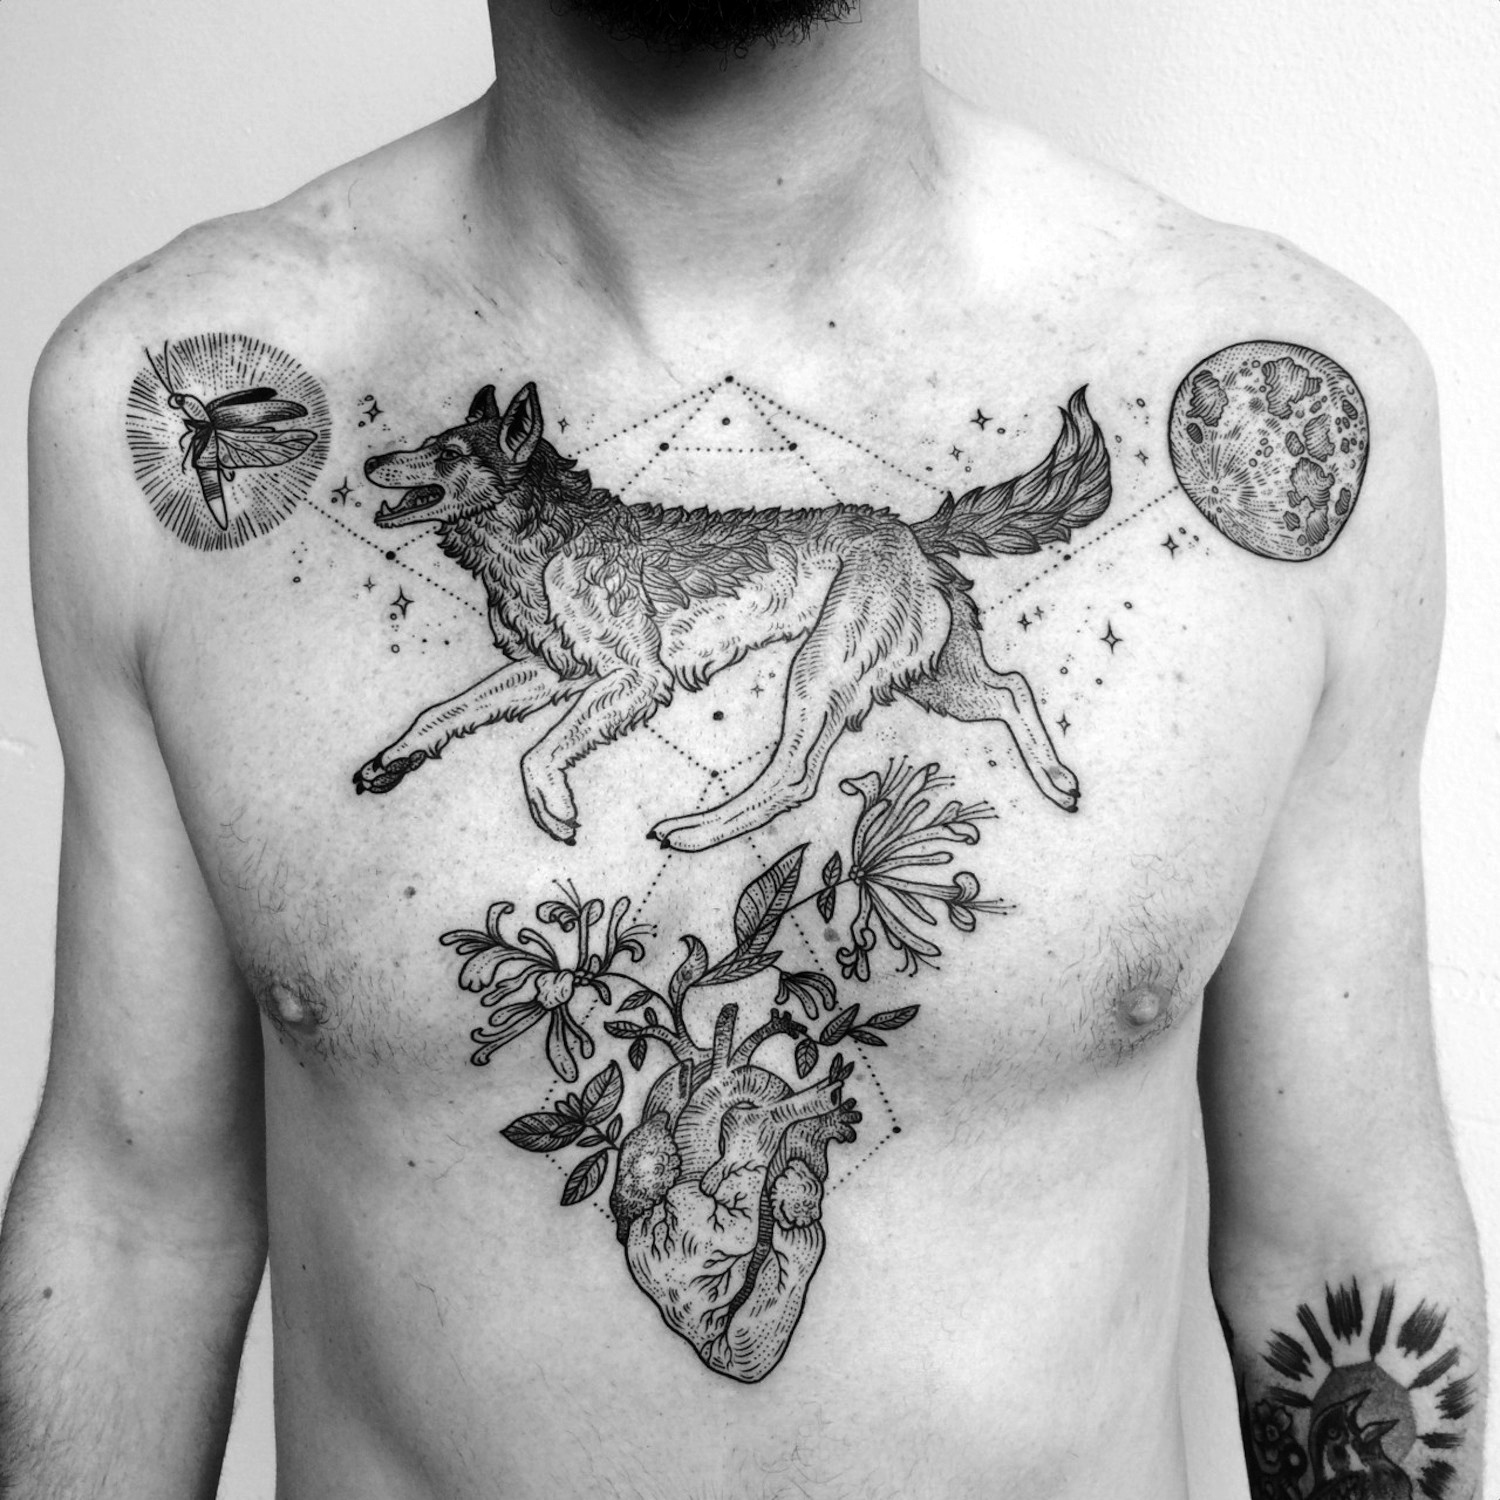 Triangular wolf tattoo by Pony Reinhardt